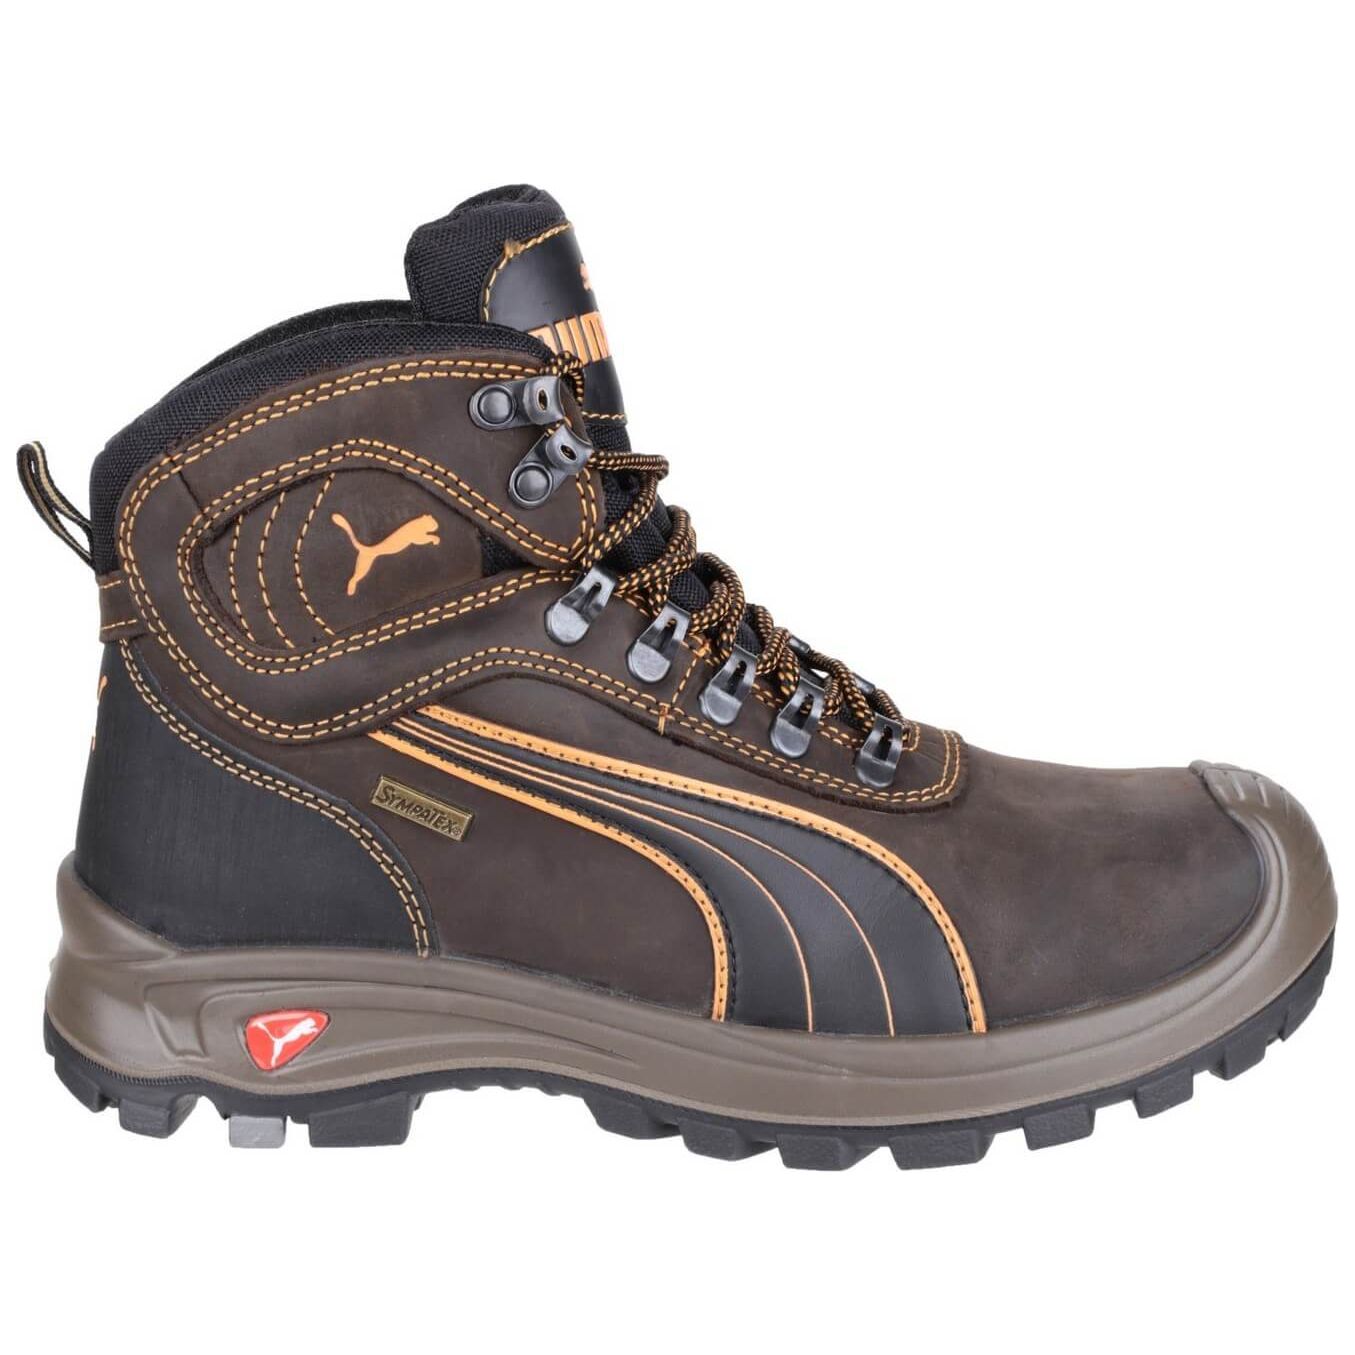 Puma Sierra Nevada Safety Boots-Brown-8